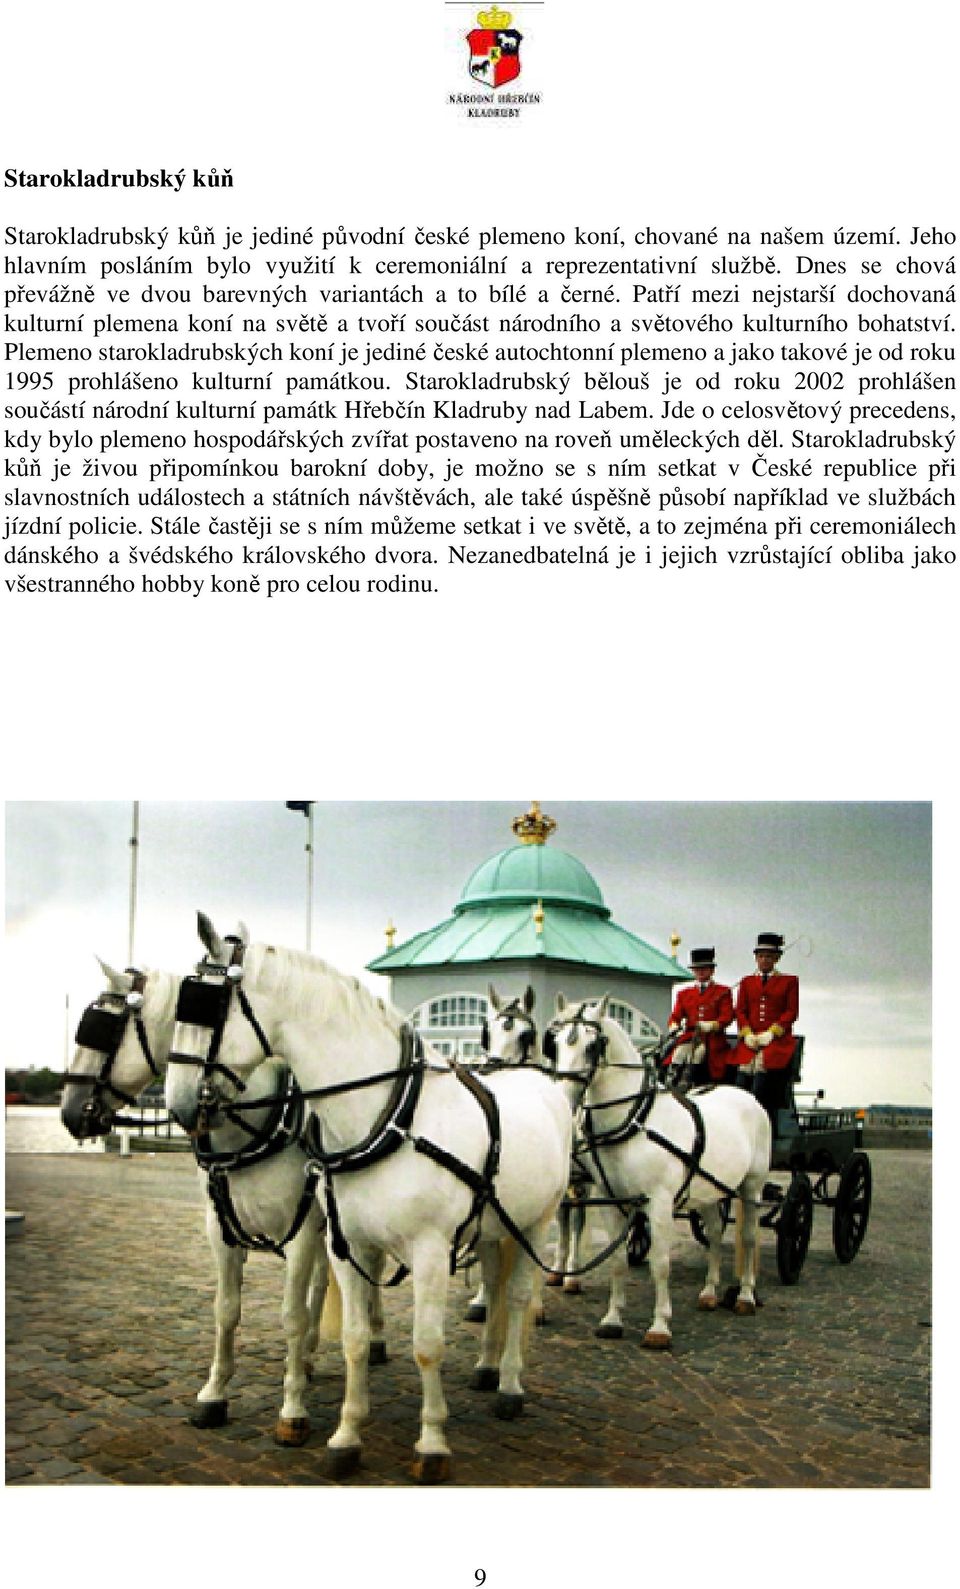 Plemeno starokladrubských koní je jediné české autochtonní plemeno a jako takové je od roku 1995 prohlášeno kulturní památkou.